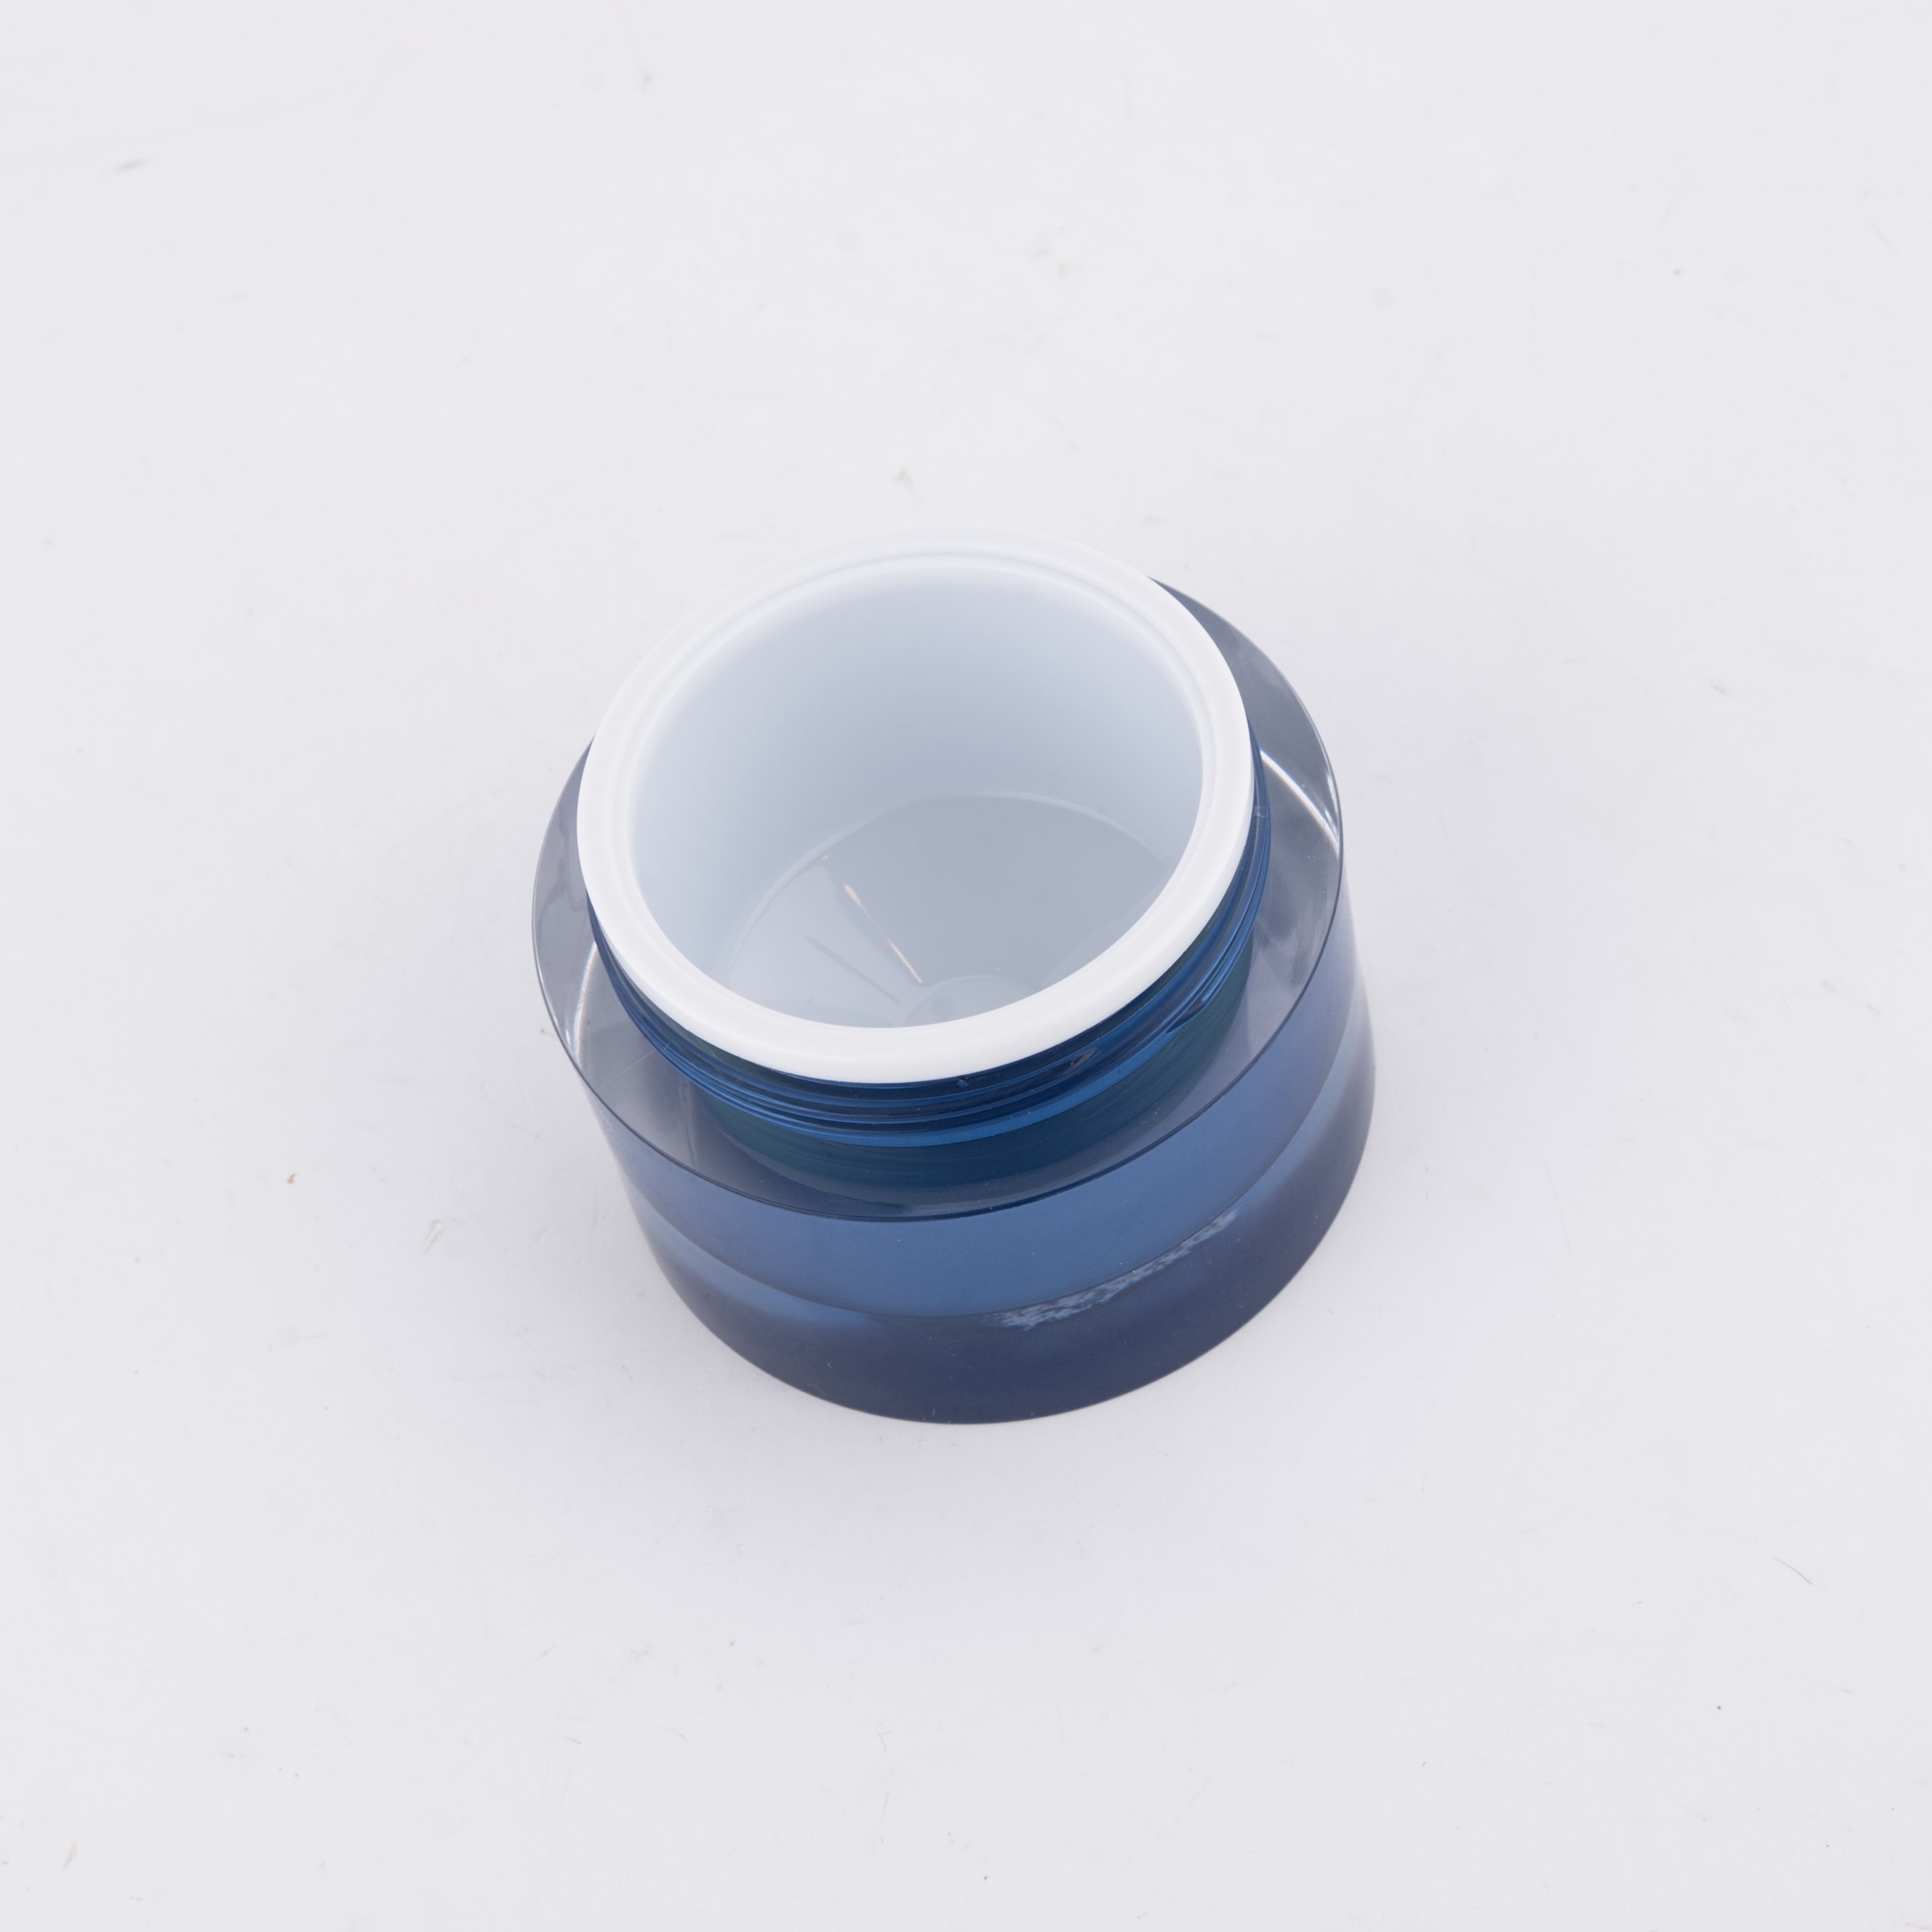 5g 15g 30g 50g 100g Arylic Cream Jar